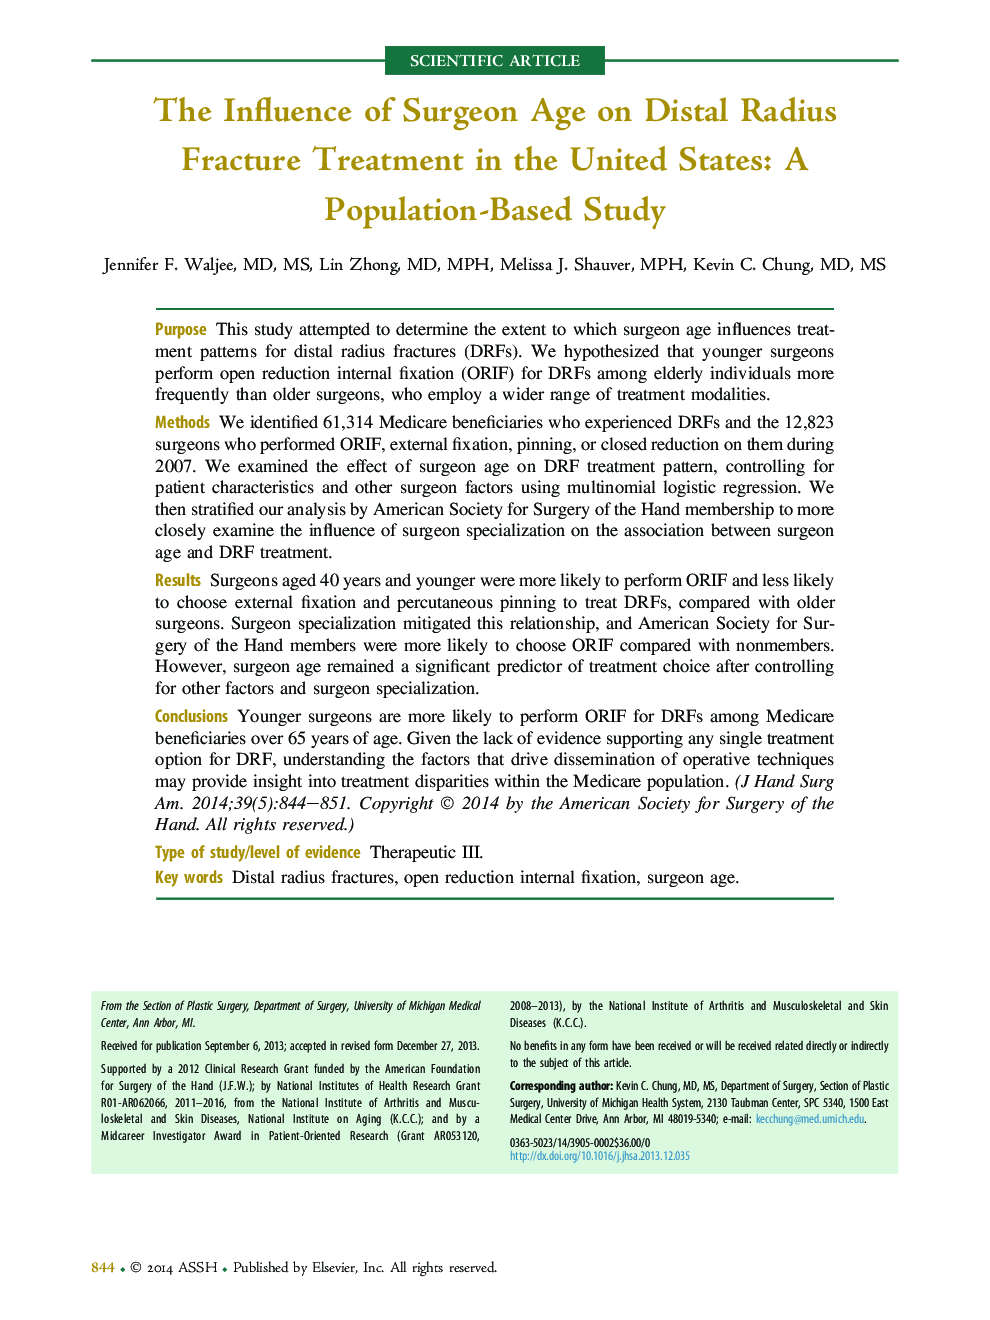 تأثیر سن جراح در درمان شکستگی شعاع دفاعی در ایالات متحده: مطالعه مبتنی بر جمعیت 